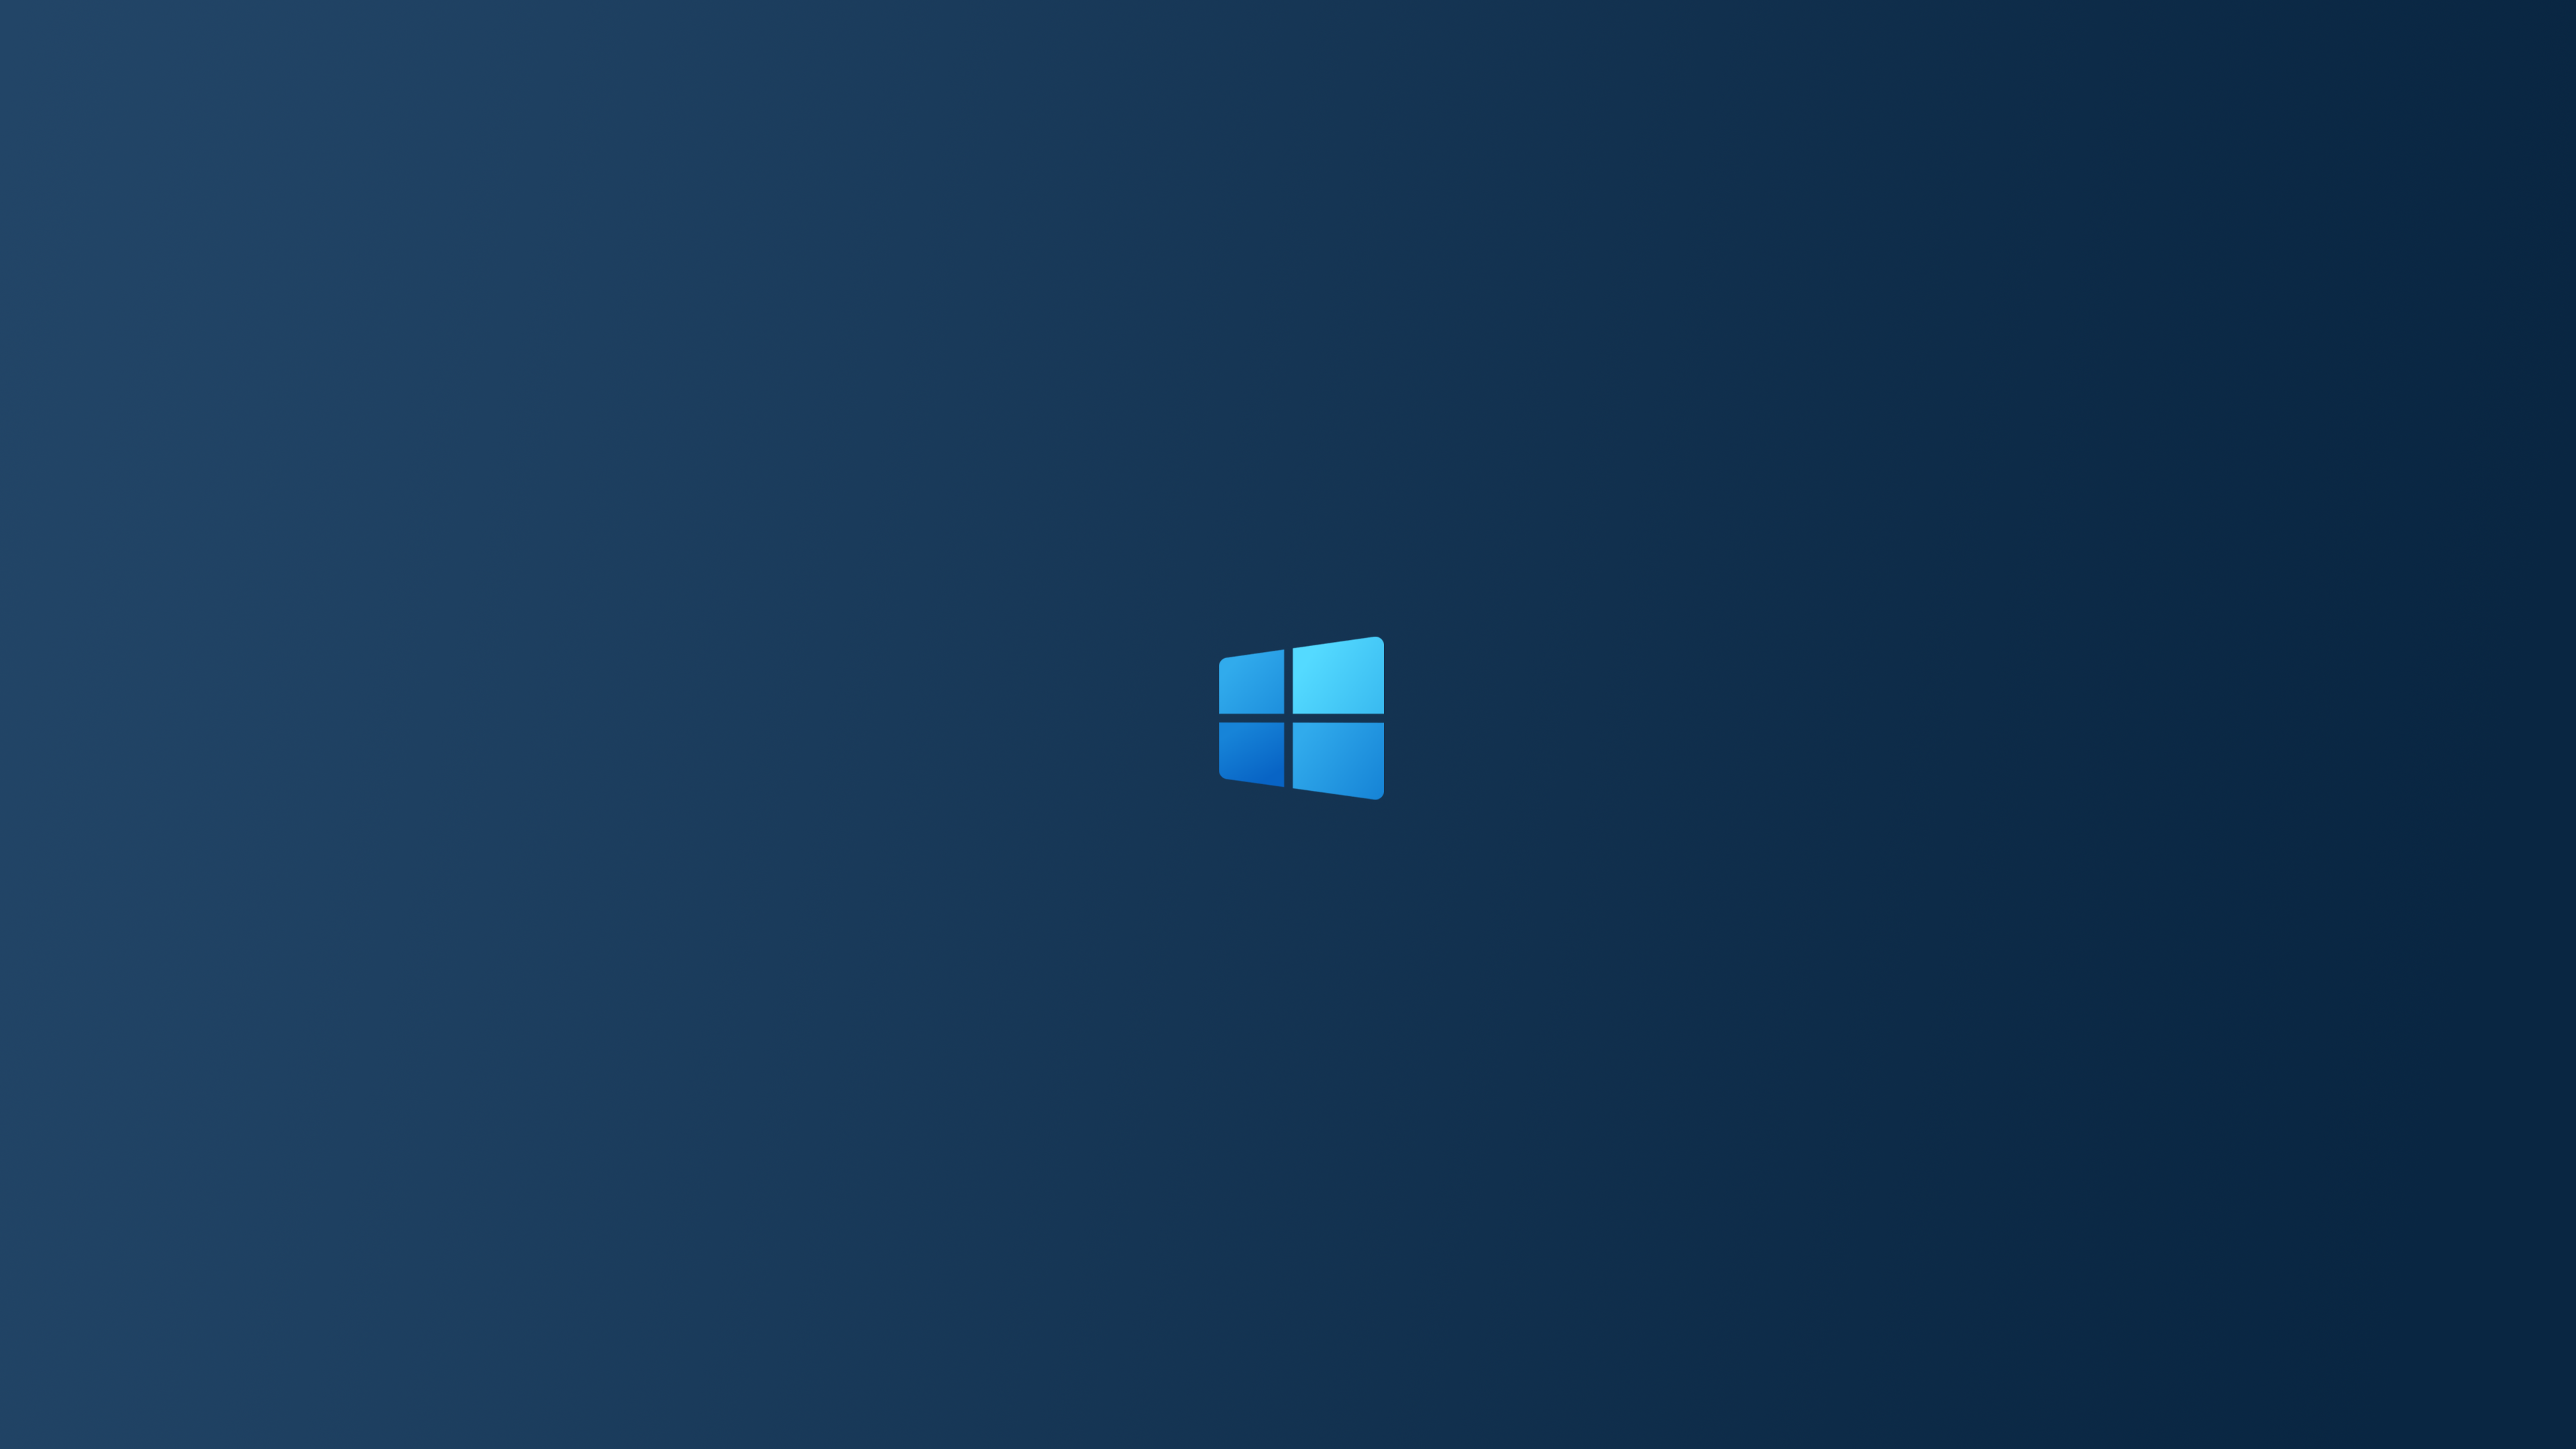 Windows 10 Windows X Windows 10x 3840x2160